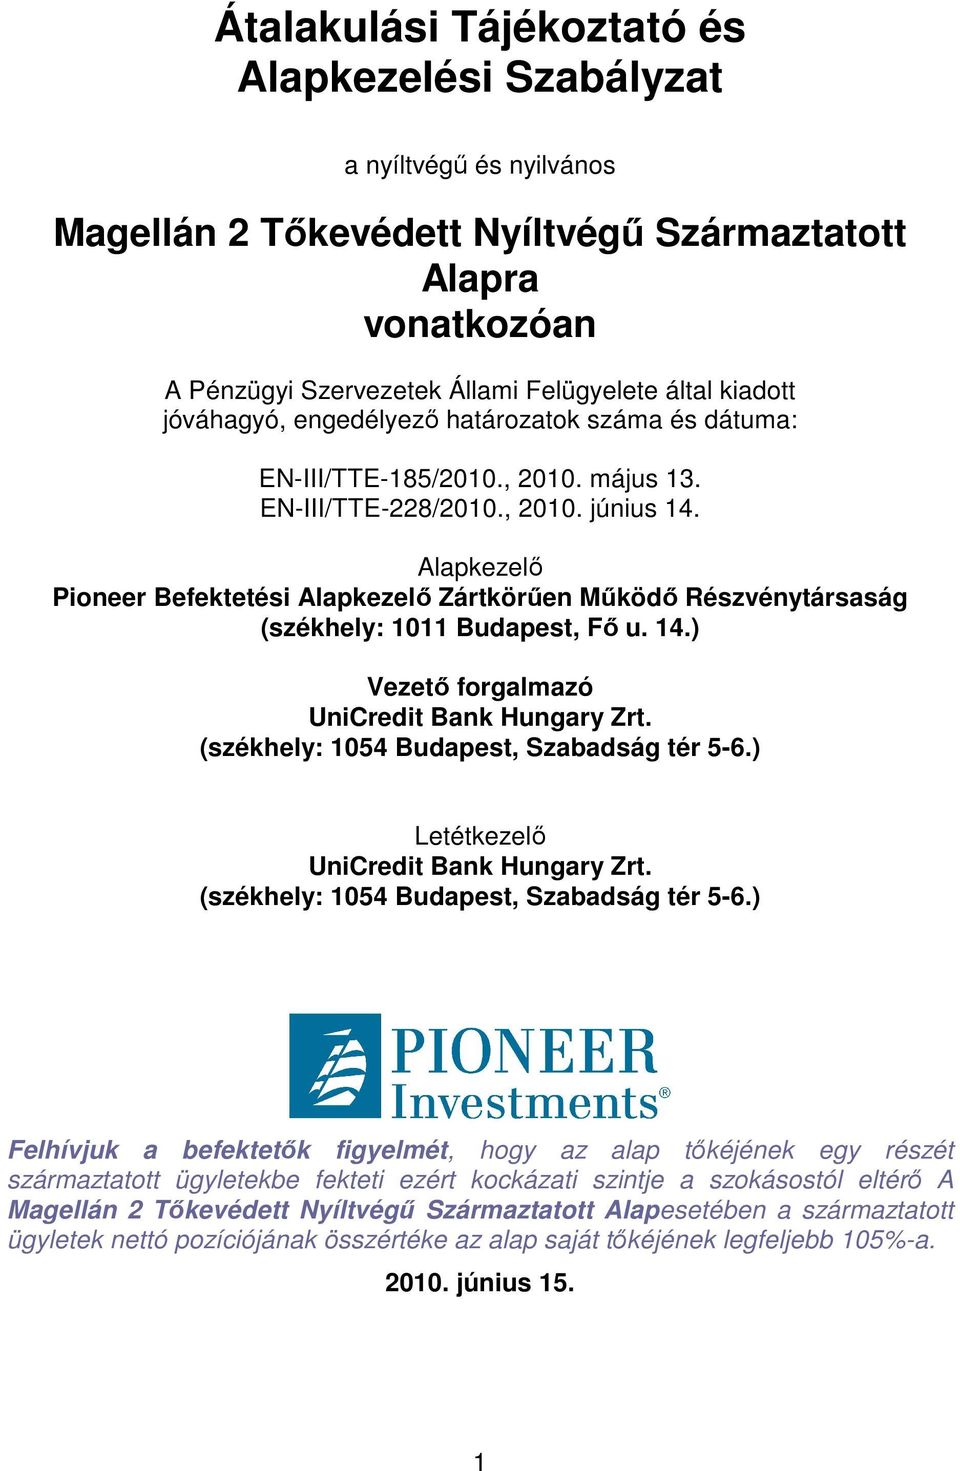 Alapkezelı Pioneer Befektetési Alapkezelı Zártkörően Mőködı Részvénytársaság (székhely: 1011 Budapest, Fı u. 14.) Vezetı forgalmazó UniCredit Bank Hungary Zrt.